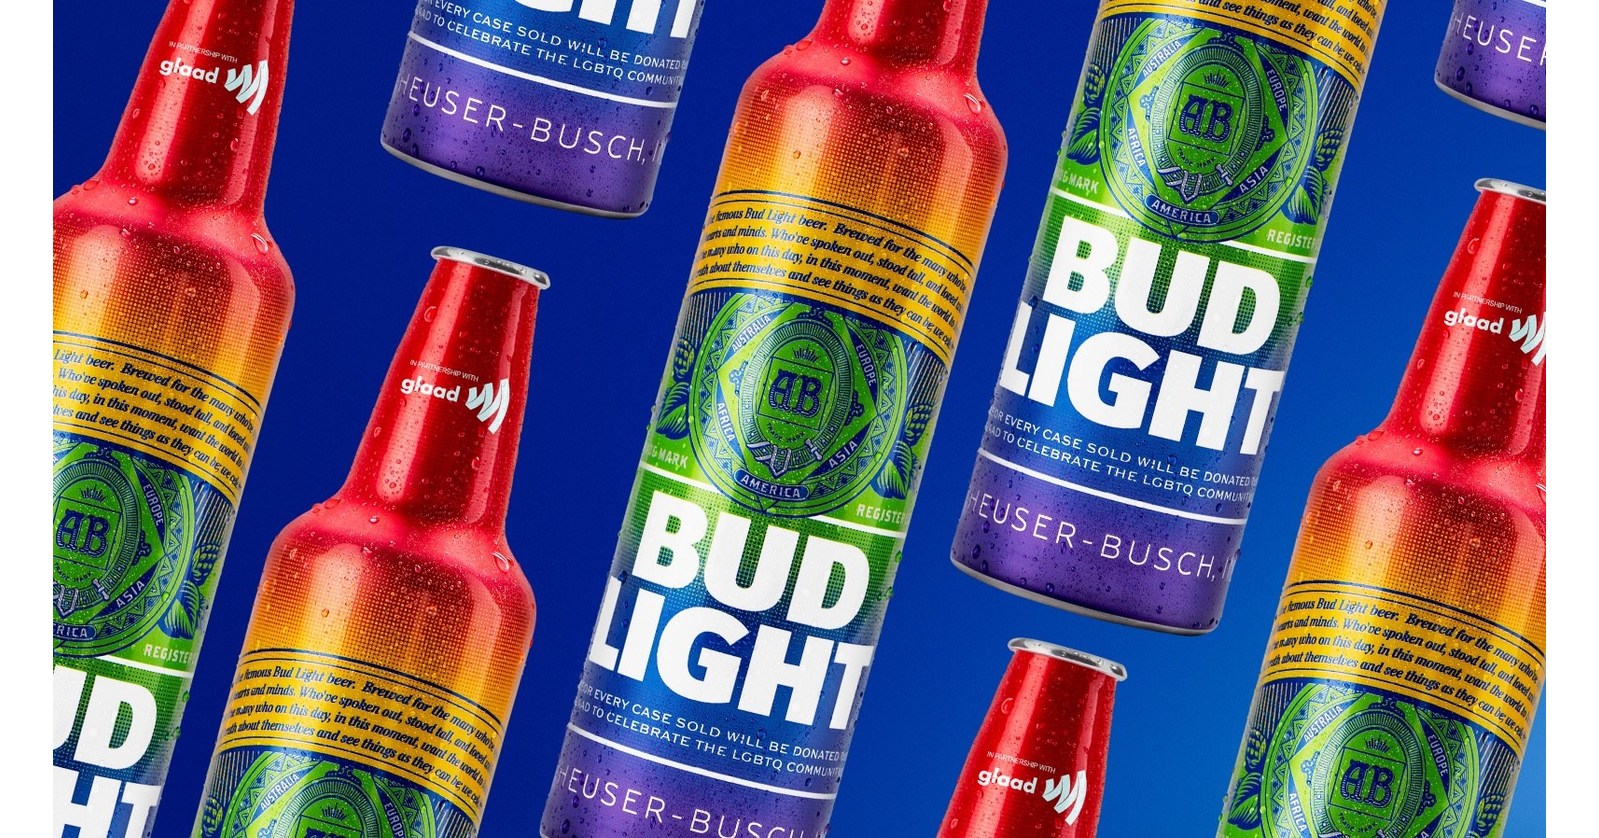 Bud Light World Pride Bottles GLAAD